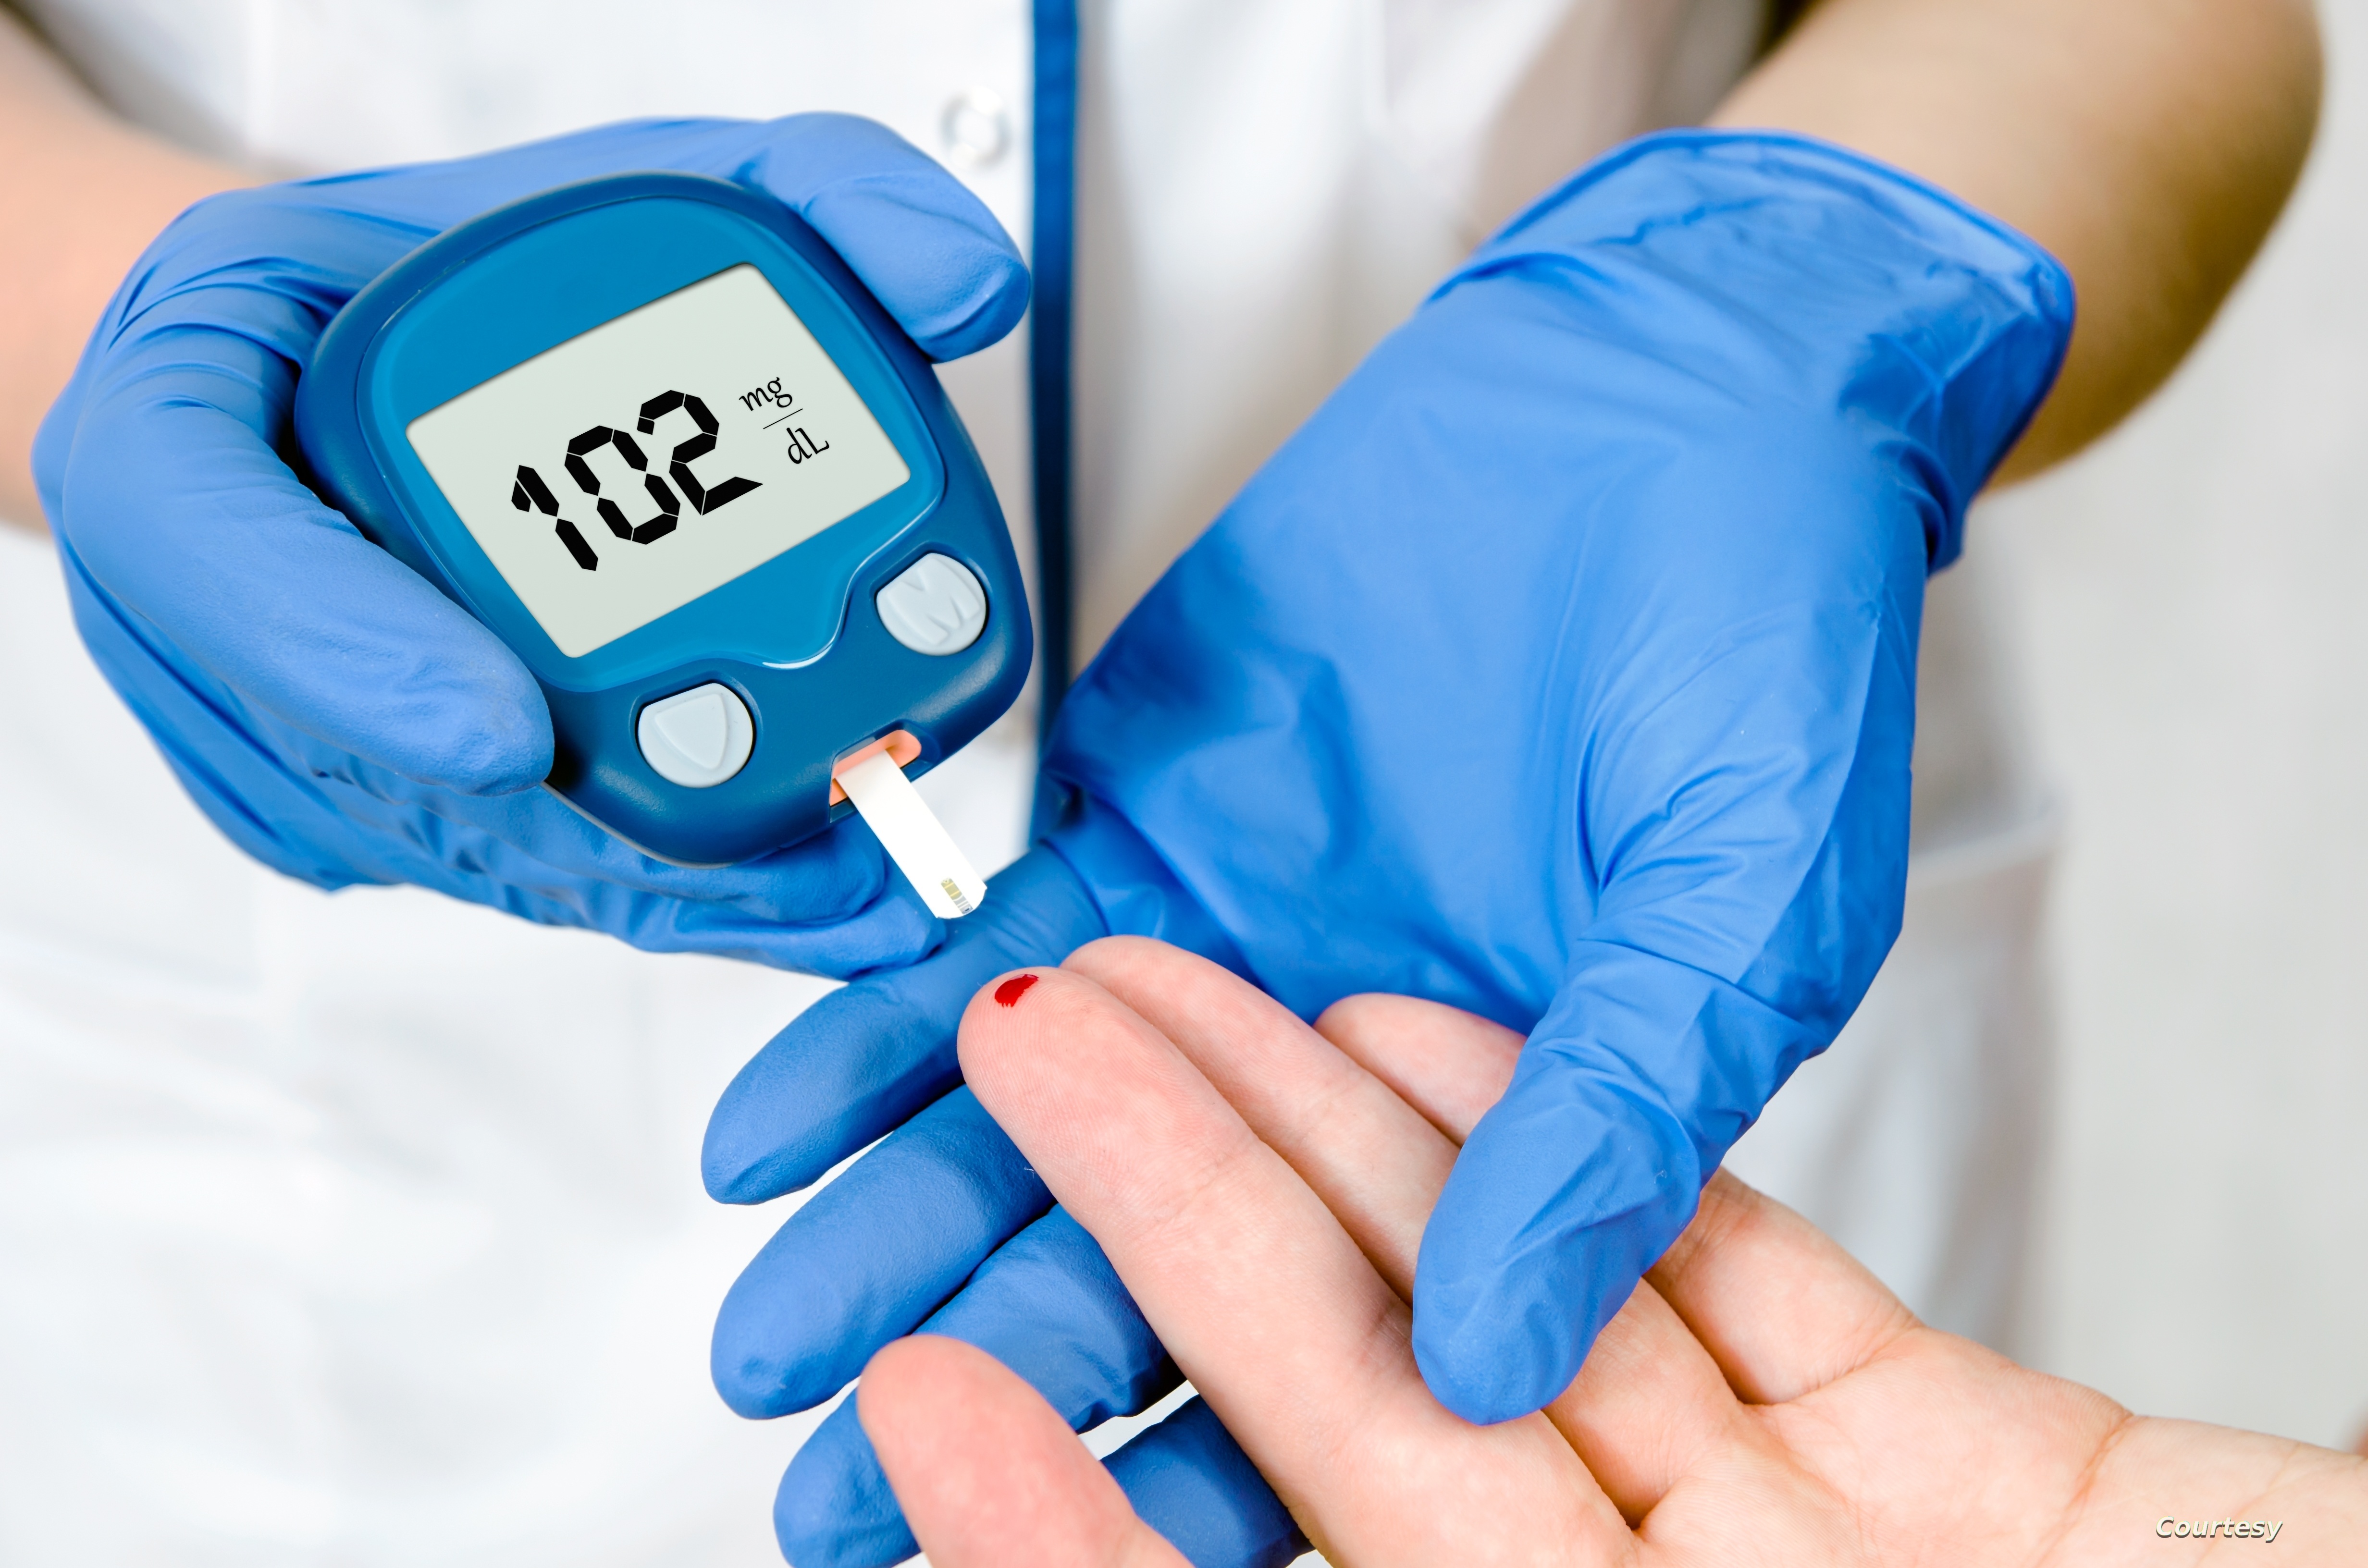 دراسة أمريكية تكشف تأثير نزلات البرد على مستويات السكر في الدم